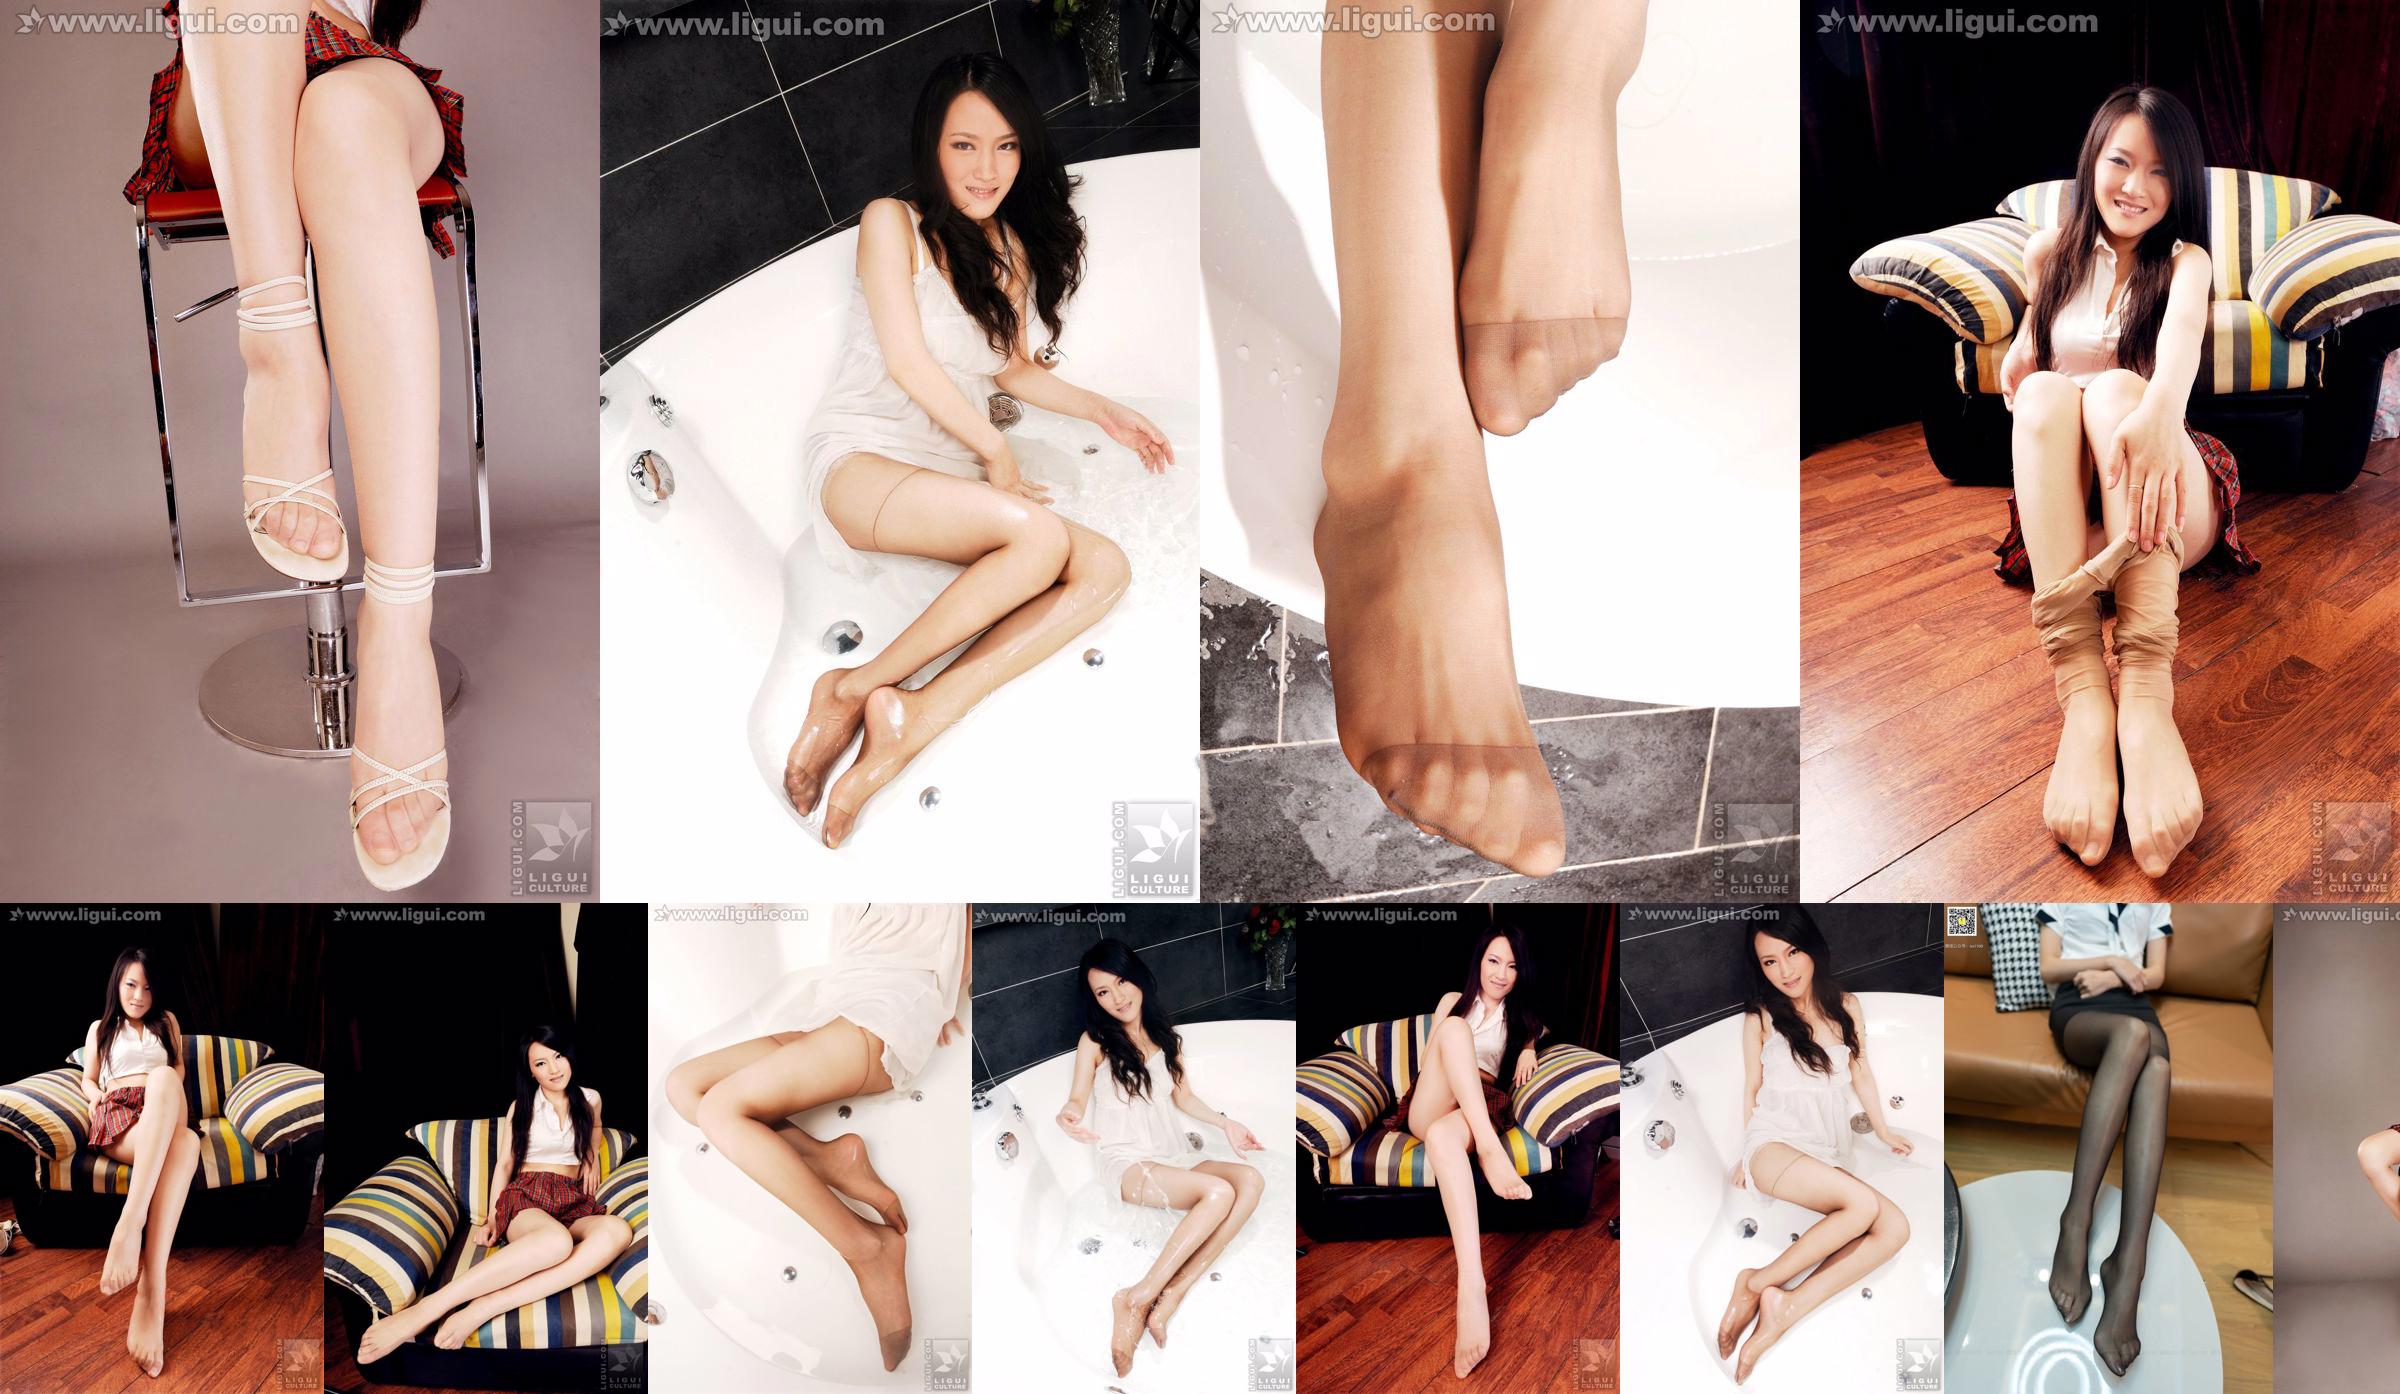 Modèle Wen Ting "Bas de viande sucrée et mignonne avec des talons hauts" [丽 柜 LiGui] Photo de belles jambes et pieds de jade No.f90951 Page 1